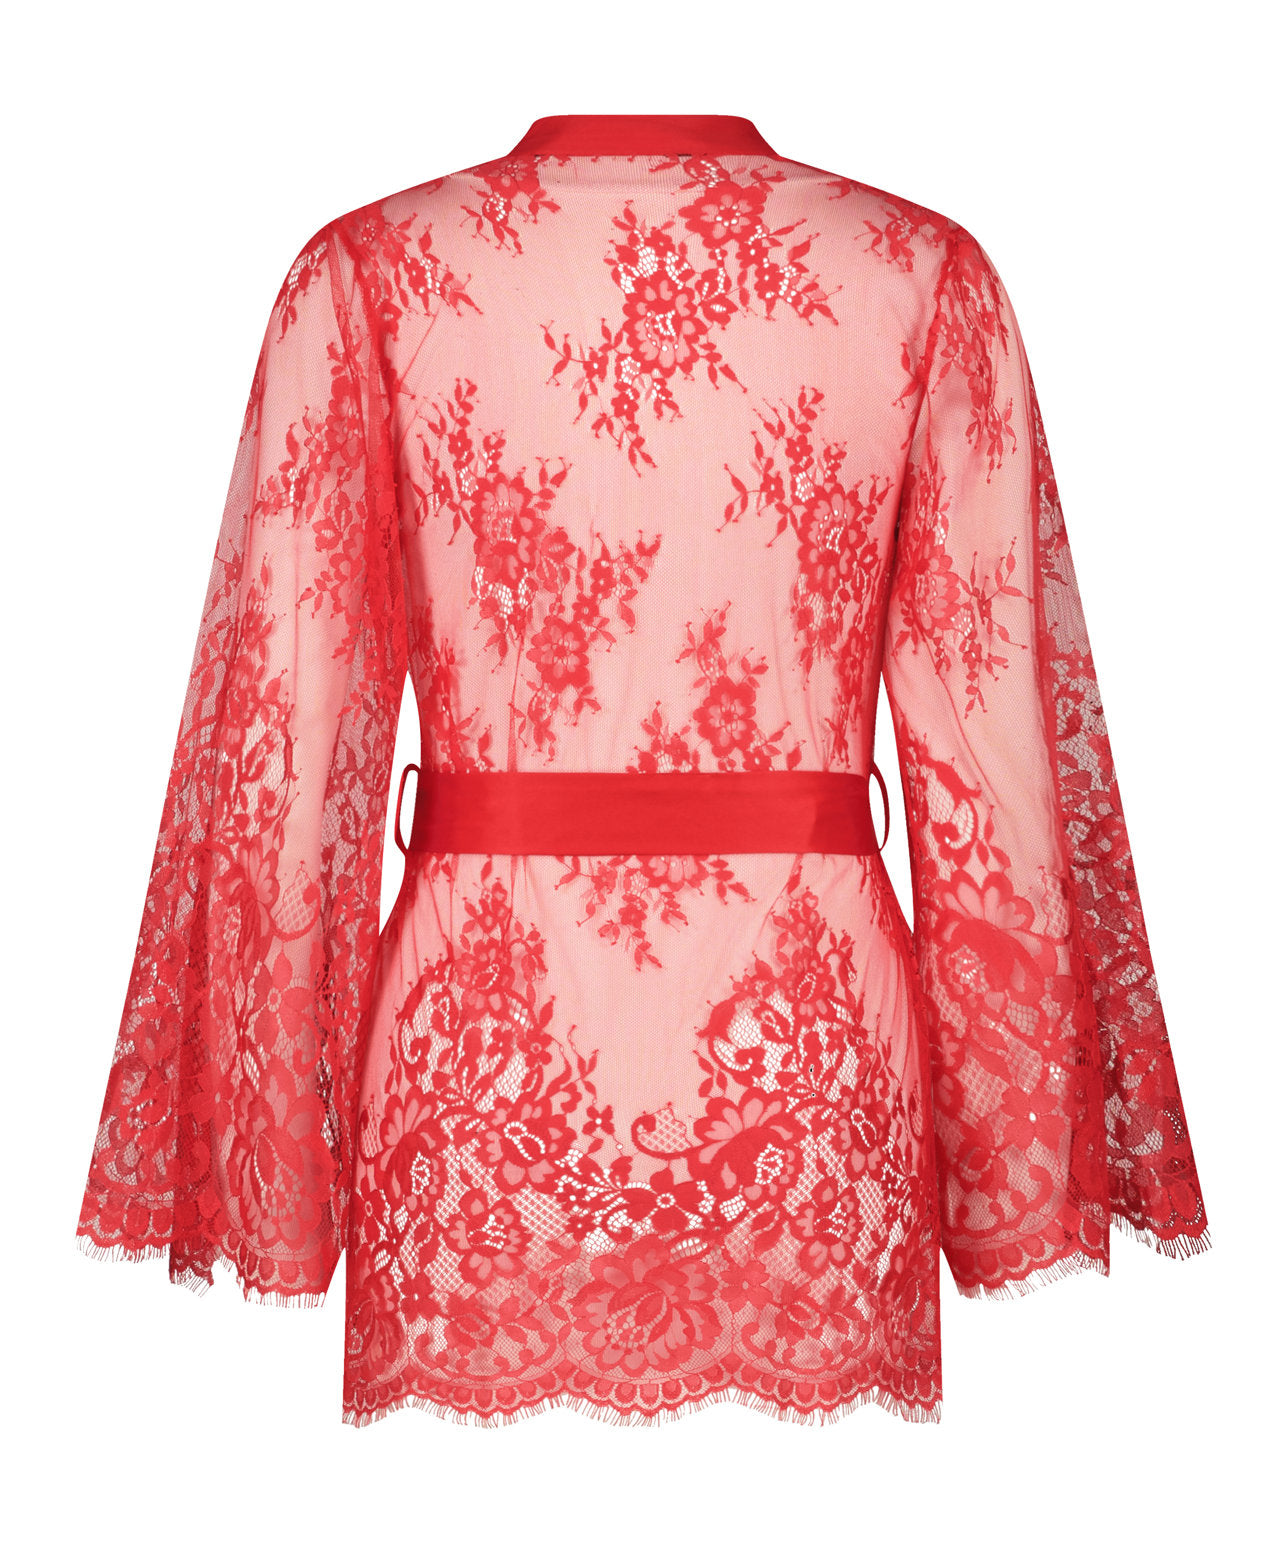 Kimono Allover Lace Isabella_191688_Tango Red_02